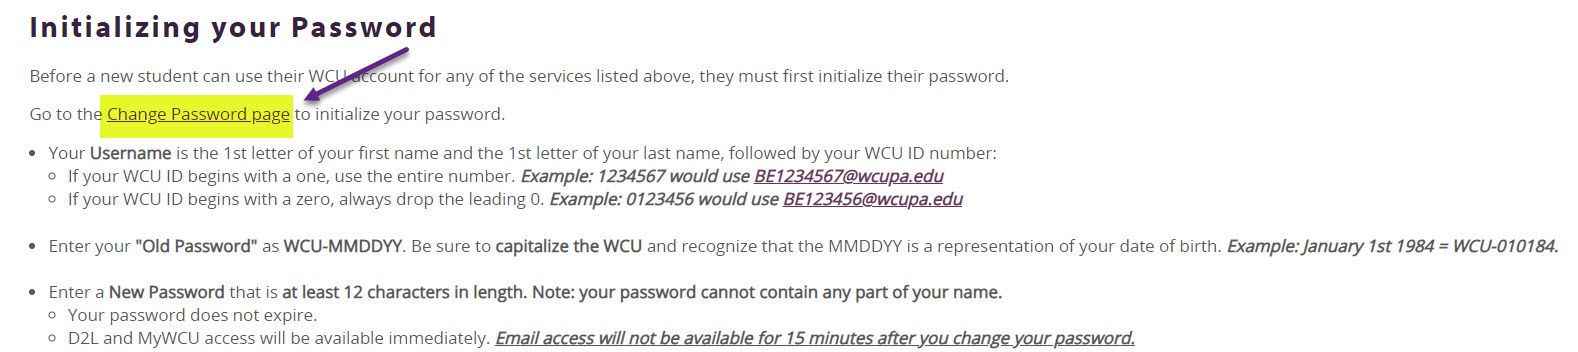 Initializing Password 2